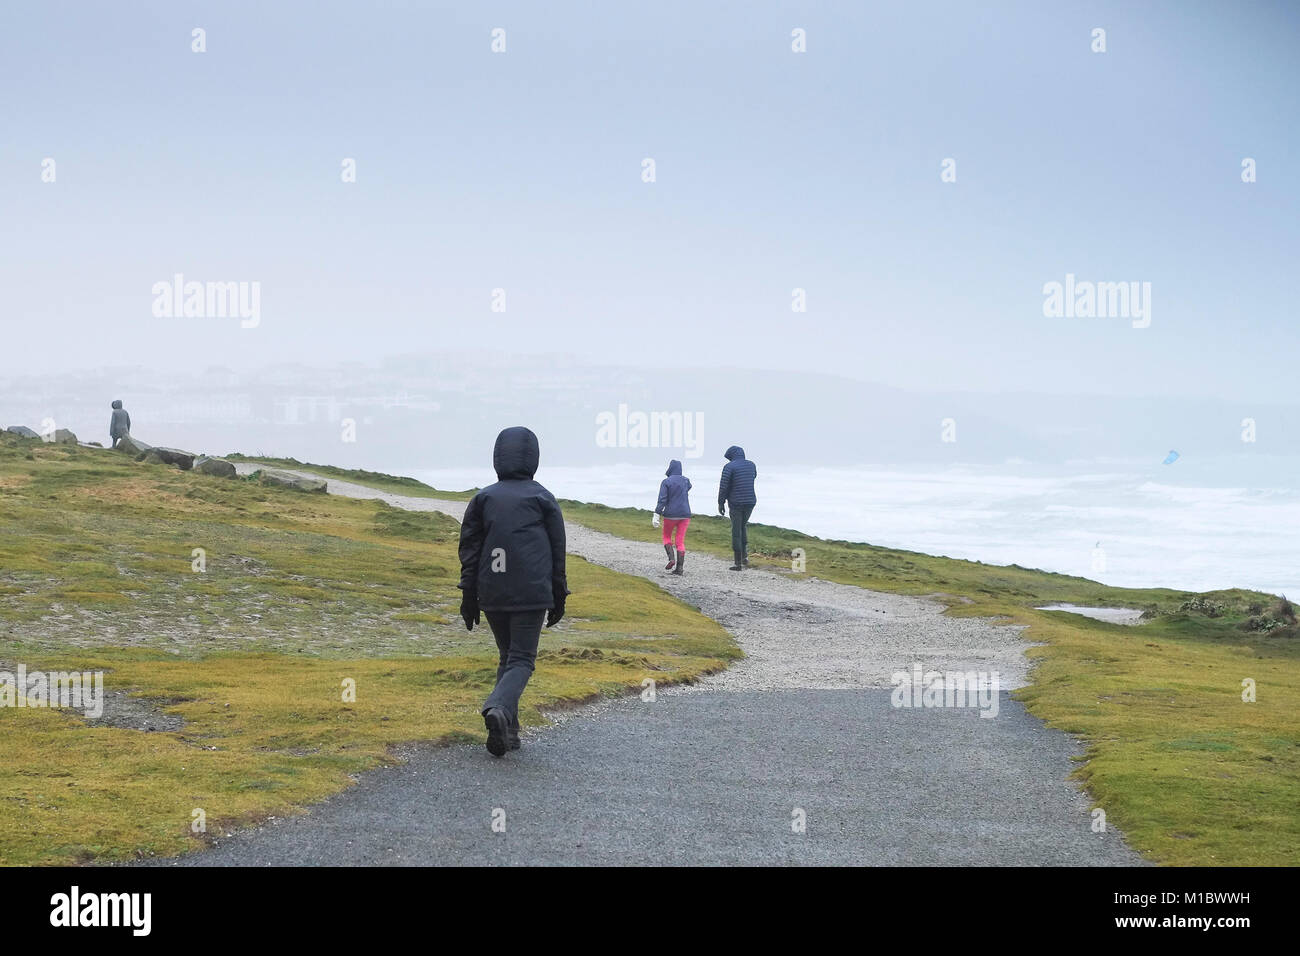 UK de l'hiver - les gens promeneurs marchant sur le South West Coast Path lors de conditions météorologiques hivernales froides Newquay Cornwall. Banque D'Images